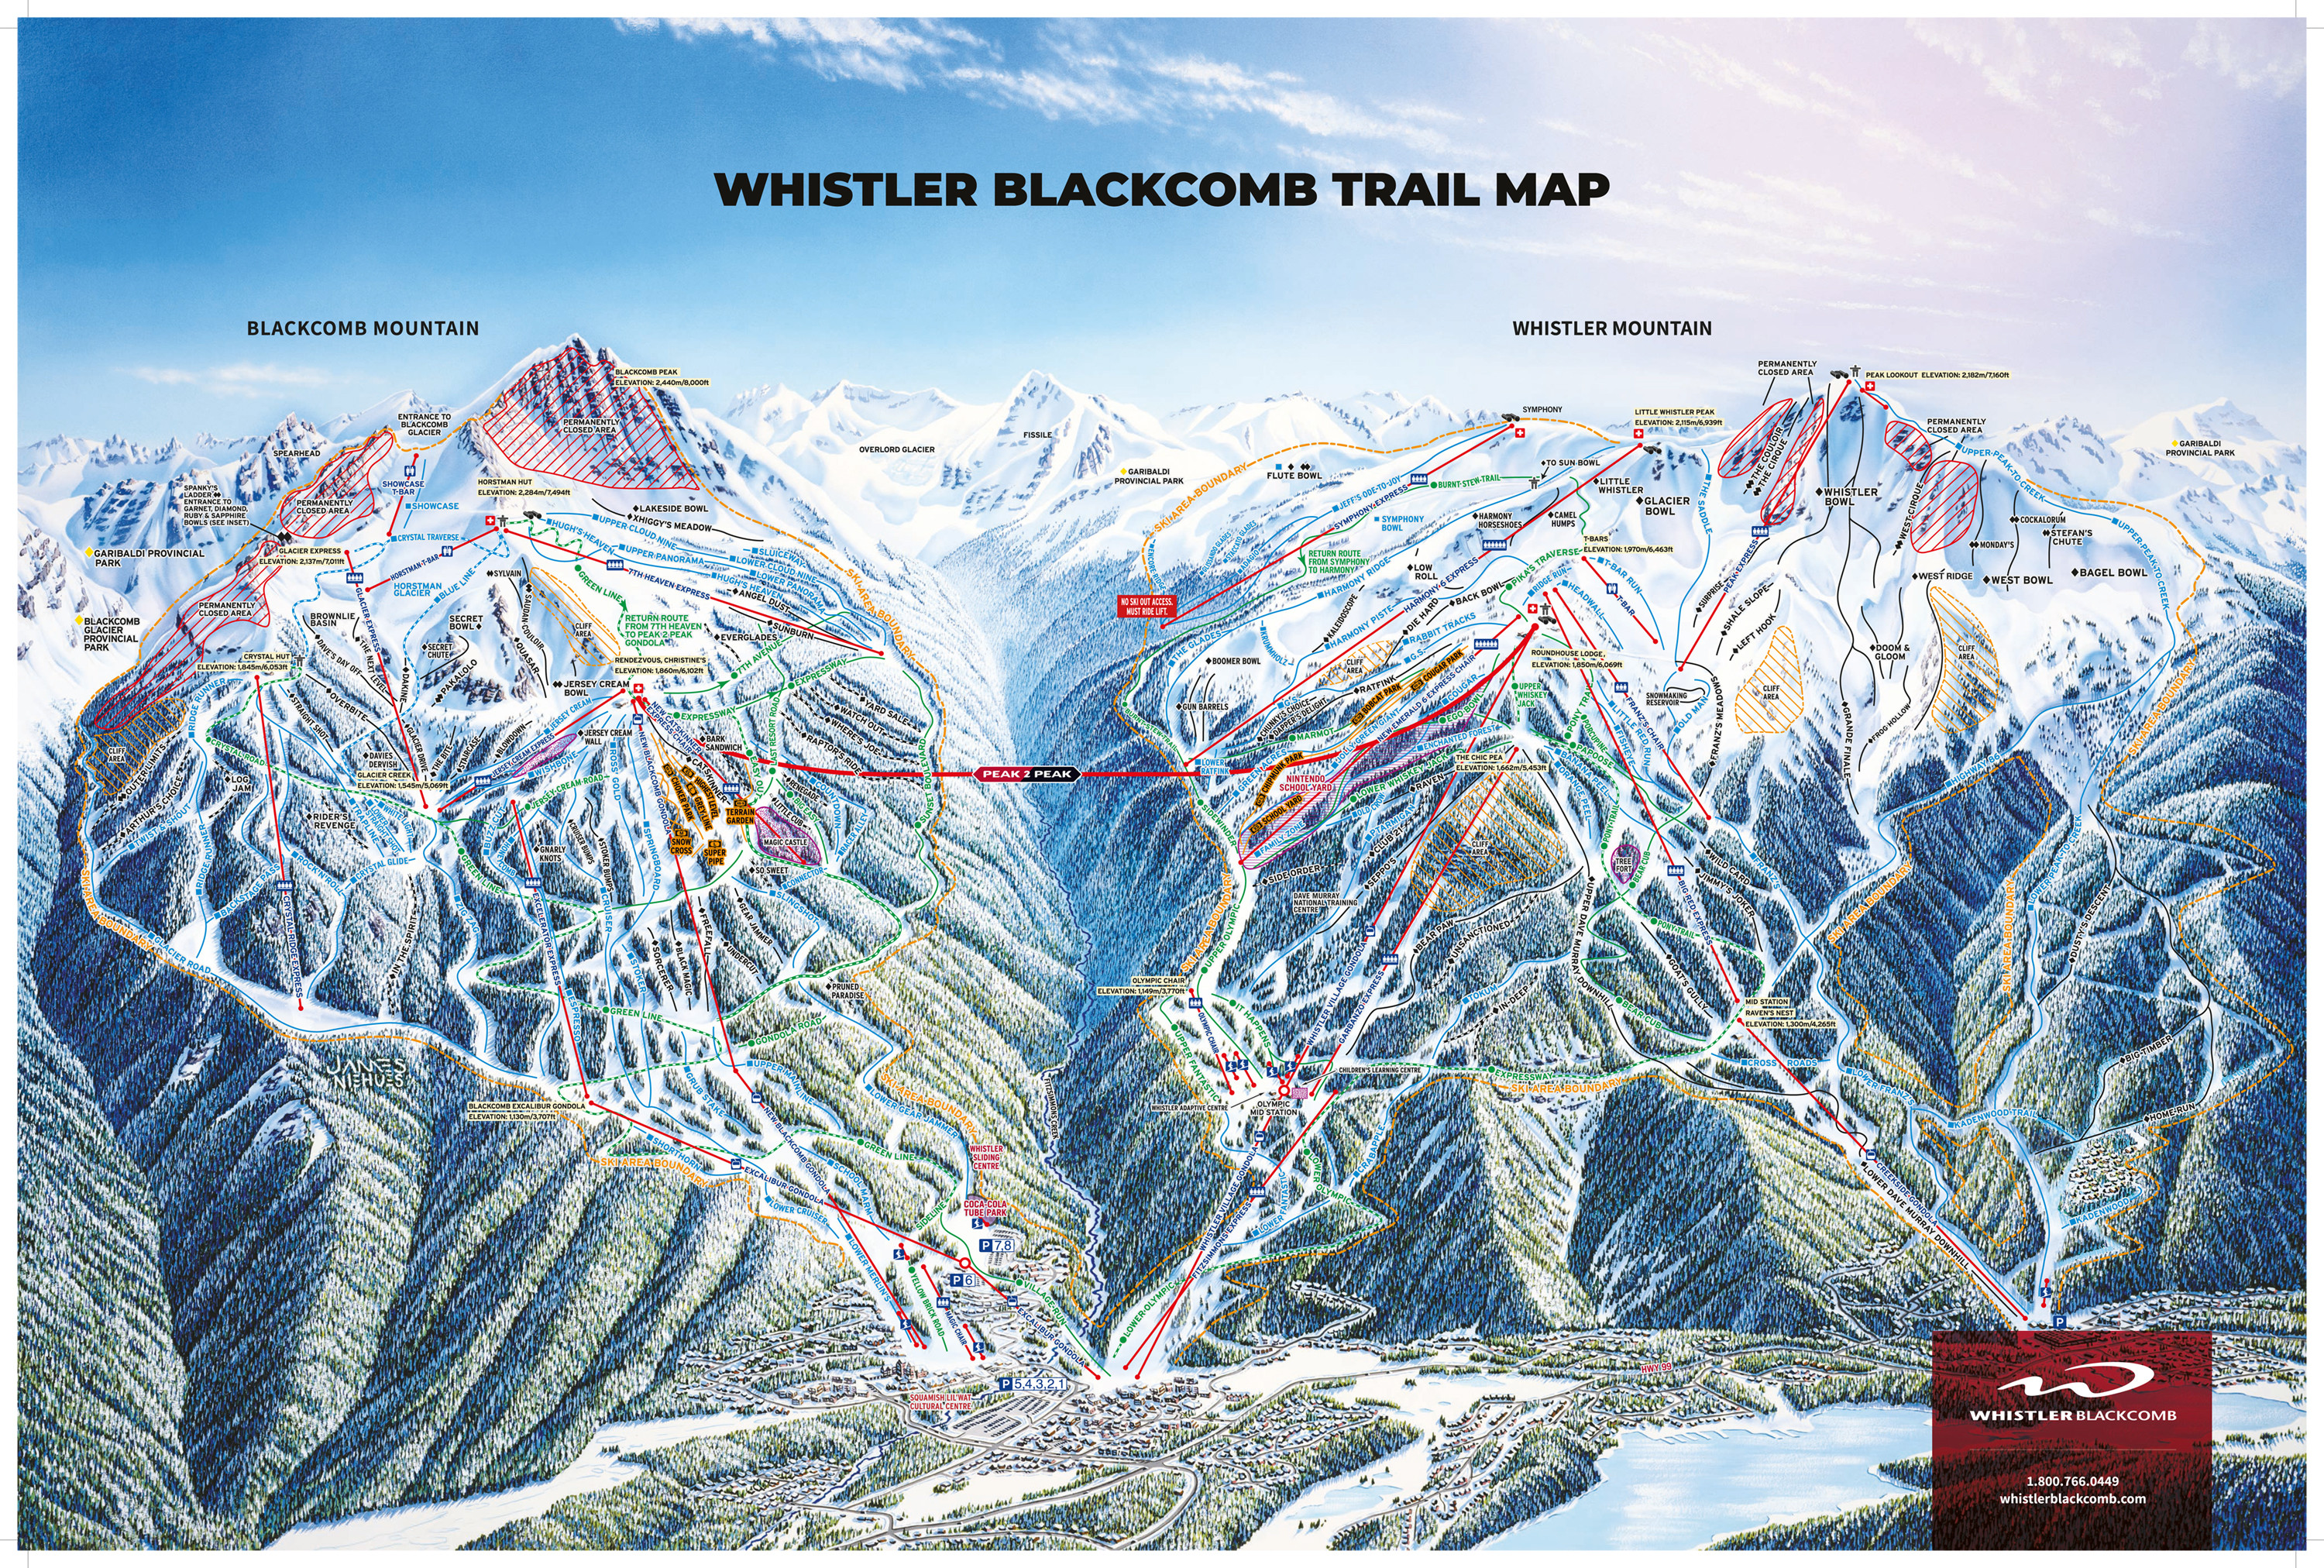 Pistenplan von Whistler Blackcomb